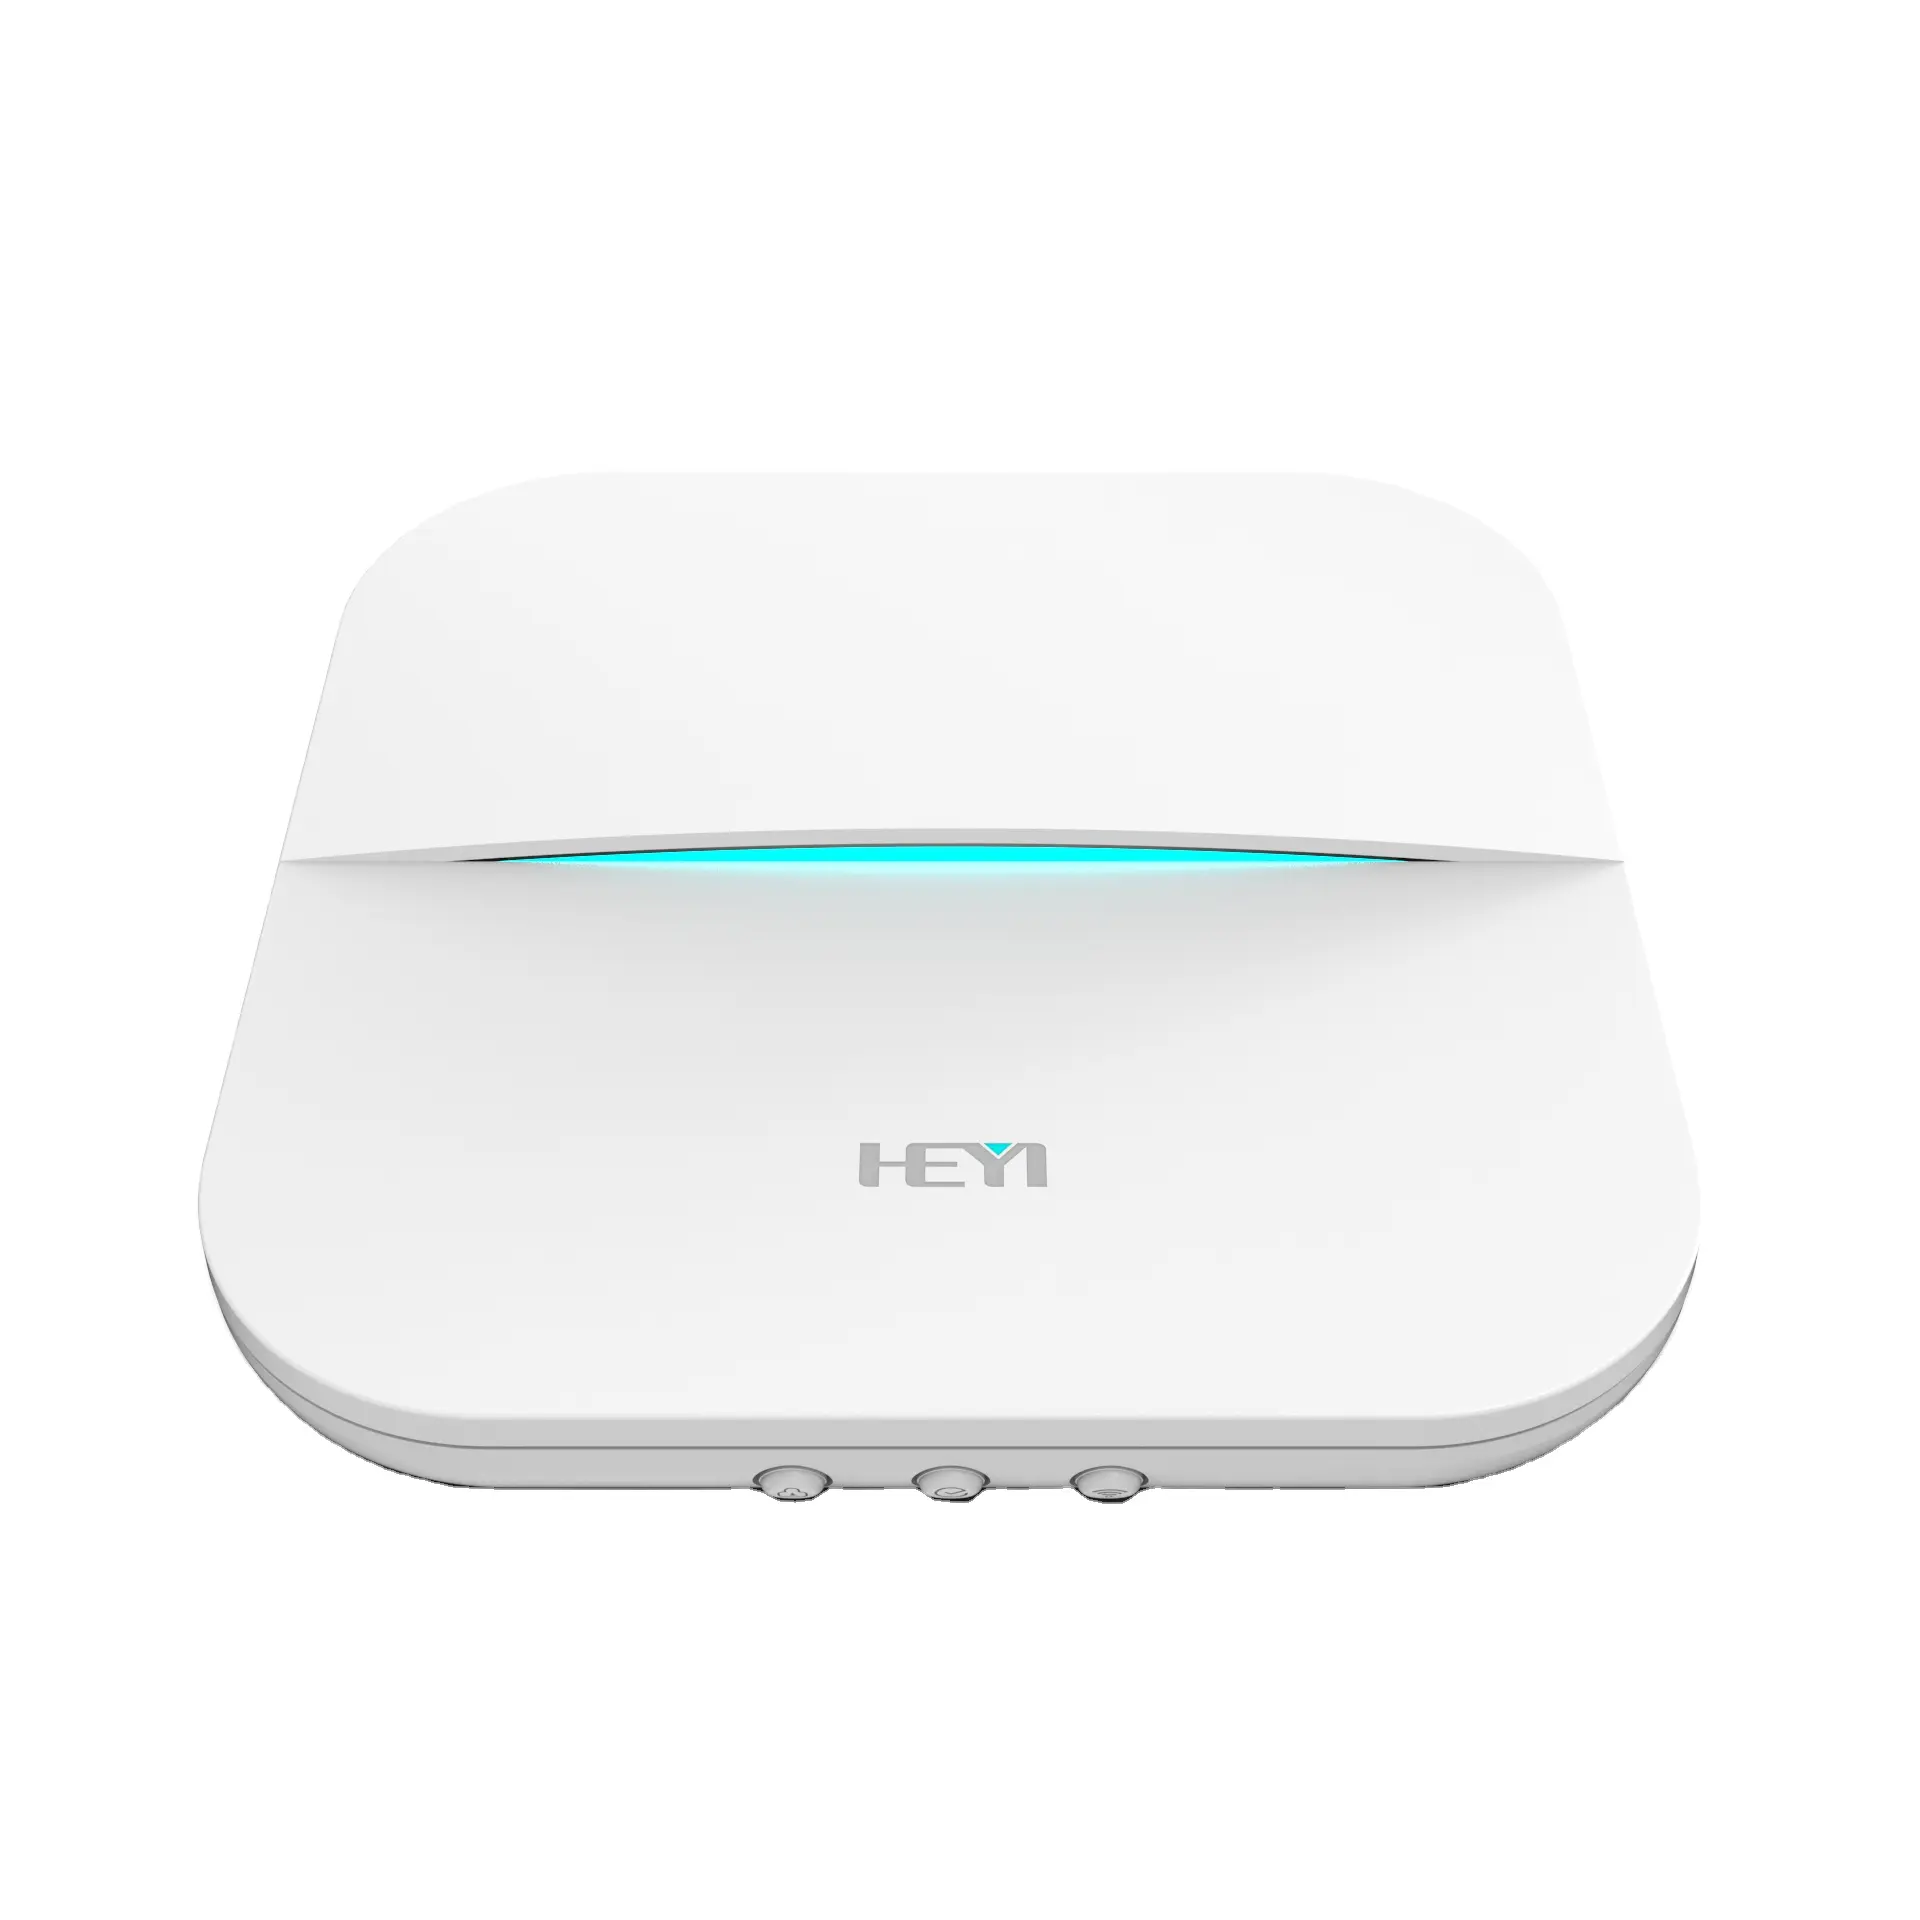 Heyi-sistema de alarma de seguridad para el hogar, inalámbrico, WIFI, GSM, 3G, alarma inteligente, soporte Personal, color blanco, 8 Uds.